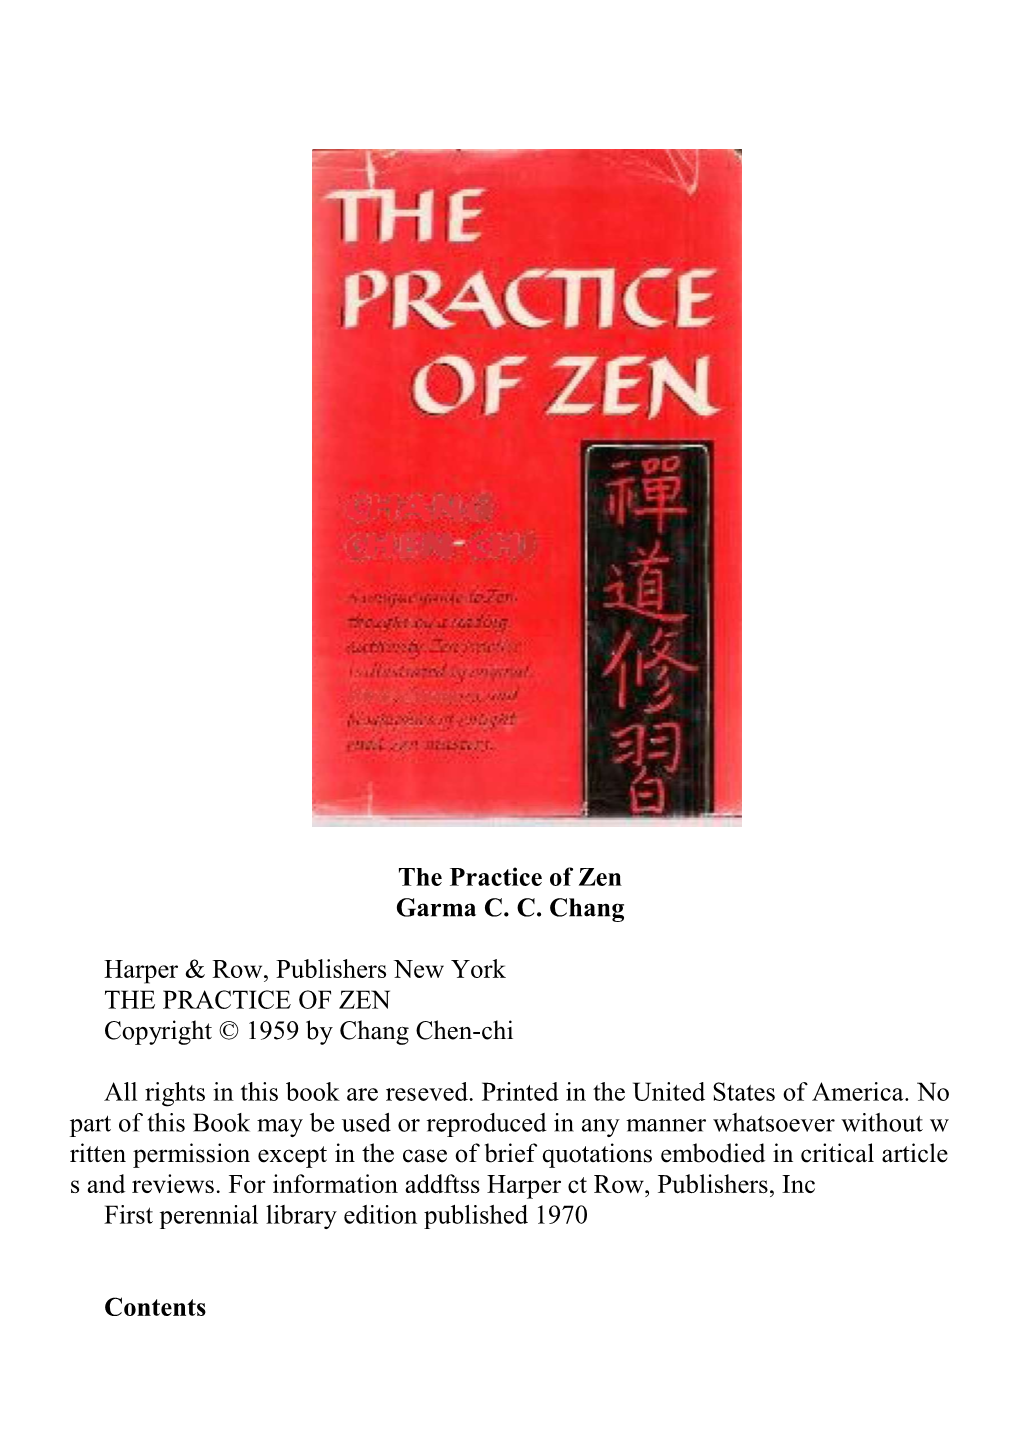 The Practice of Zengarma C. C. Changthe Practice of Zen by Garma C. C. Chang